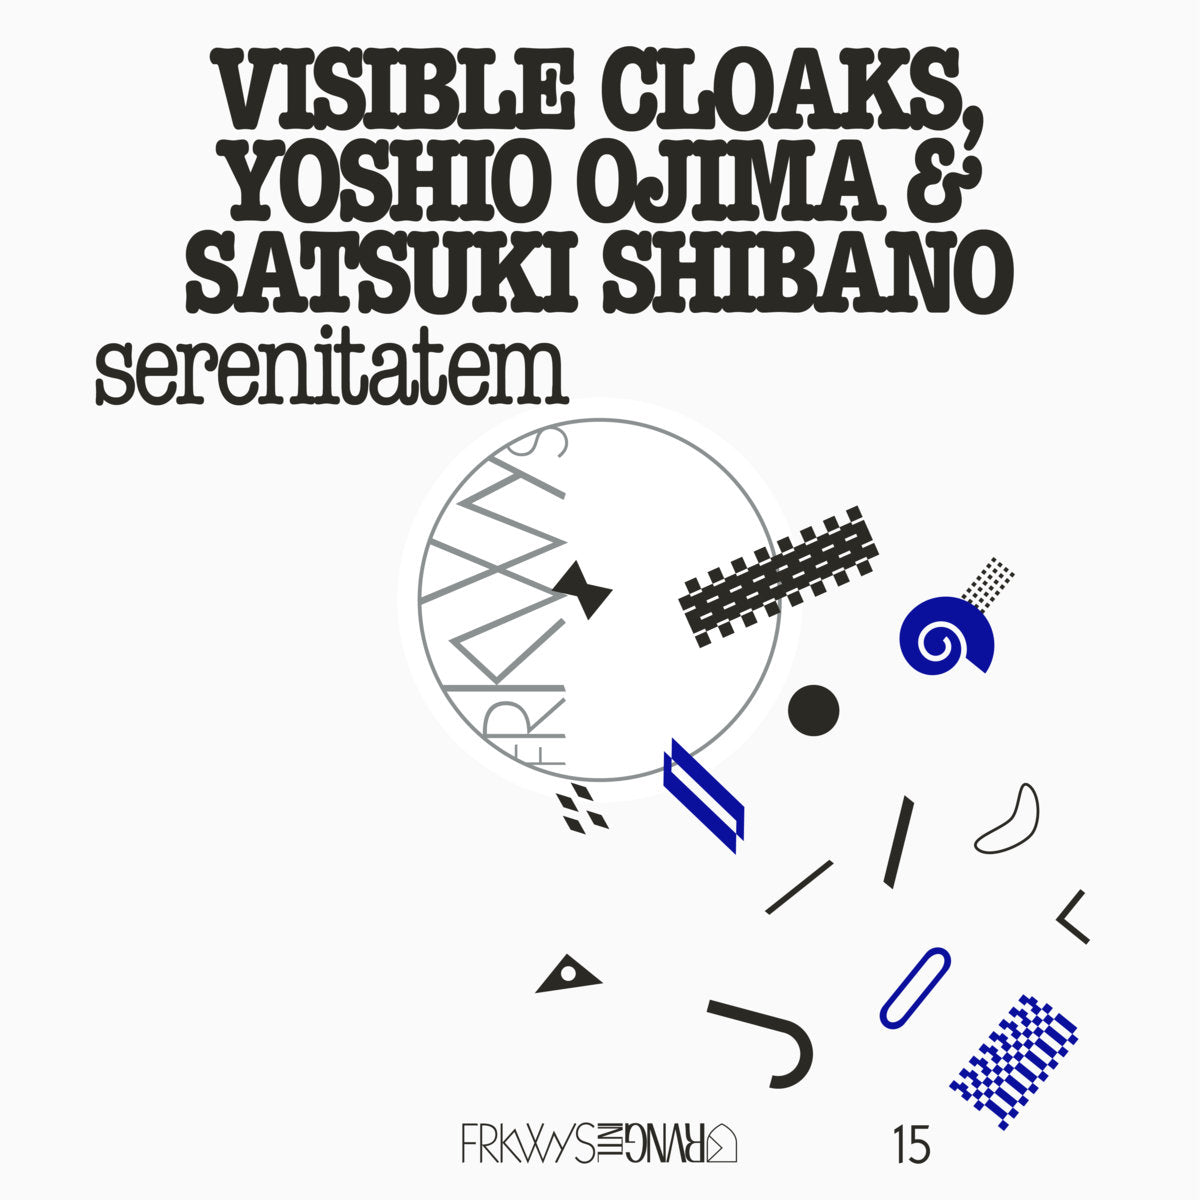 Visible Cloaks, Yoshio Ojima & Satsuki Shibano - FRKWYS Vol. 15: Serenitatem LP